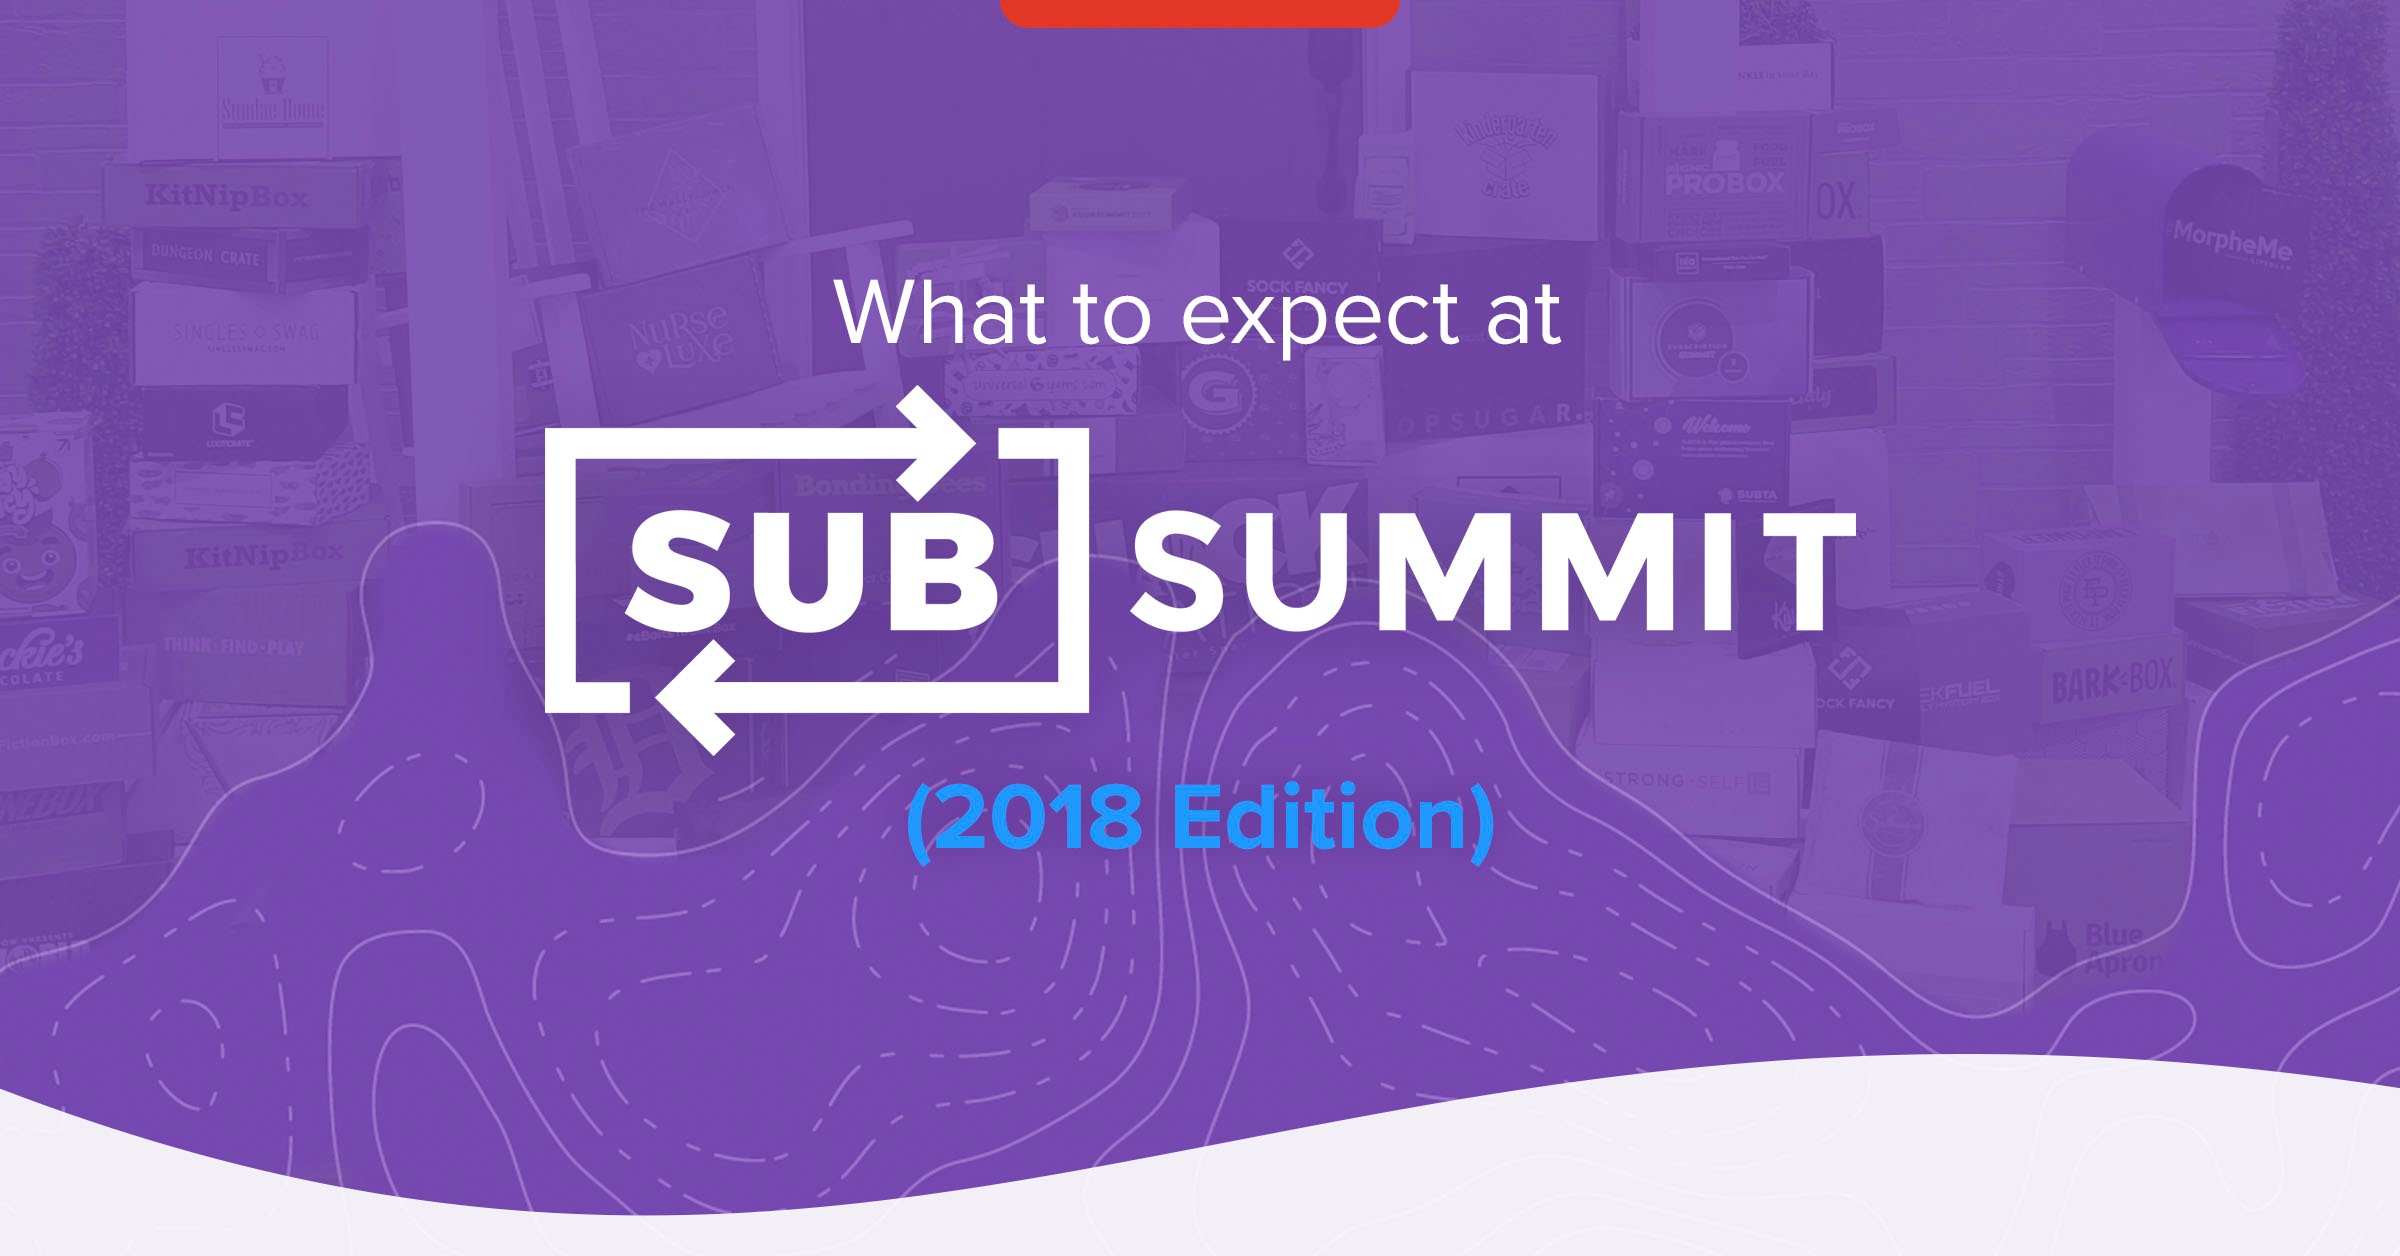 SubSummit 2018